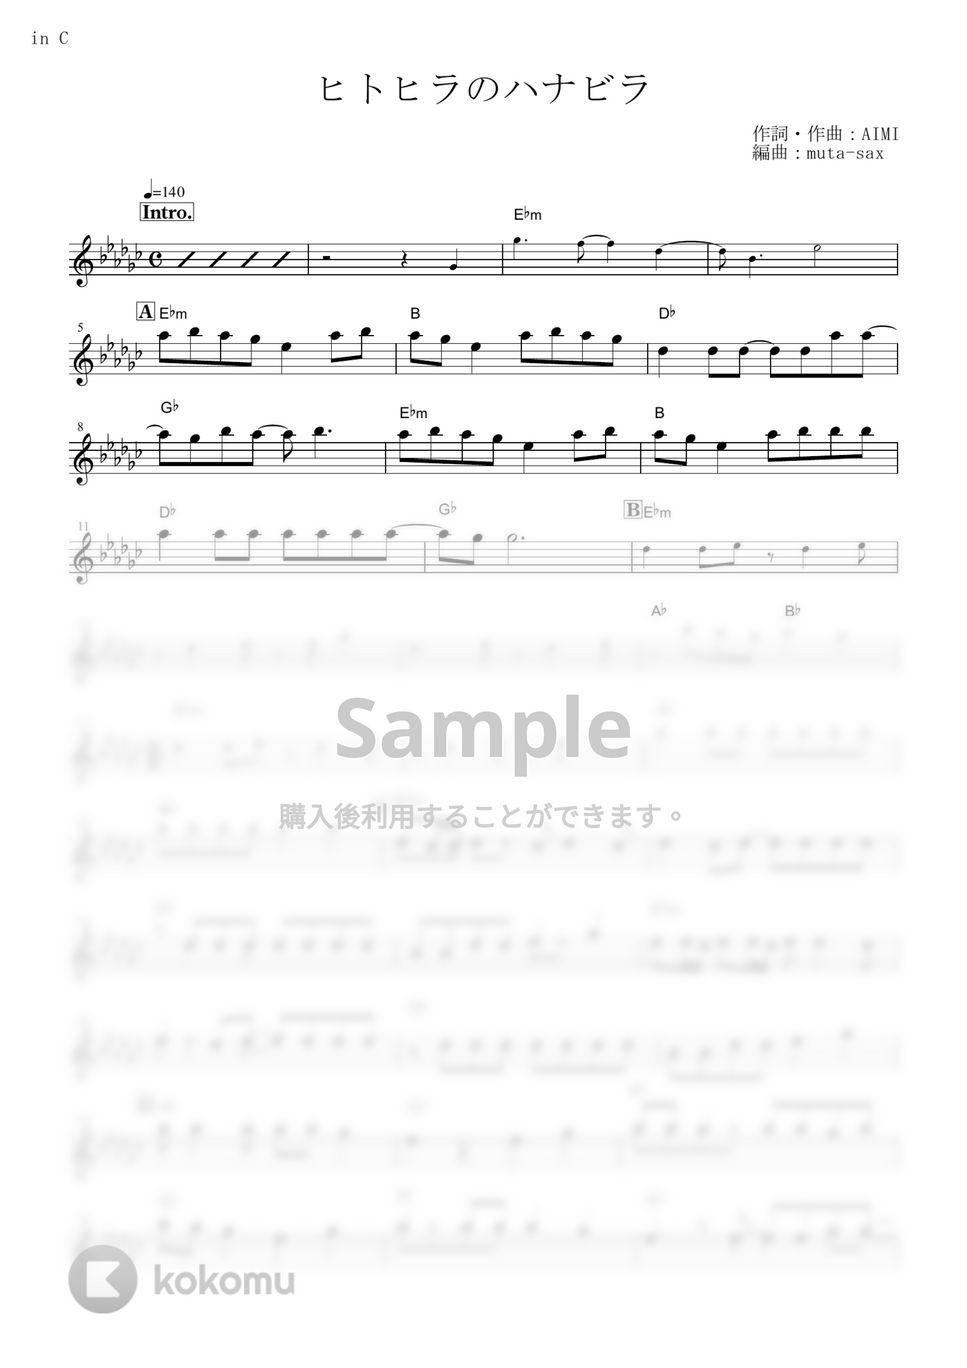 ステレオポニー - ヒトヒラのハナビラ (『BLEACH』 / in C) by muta-sax